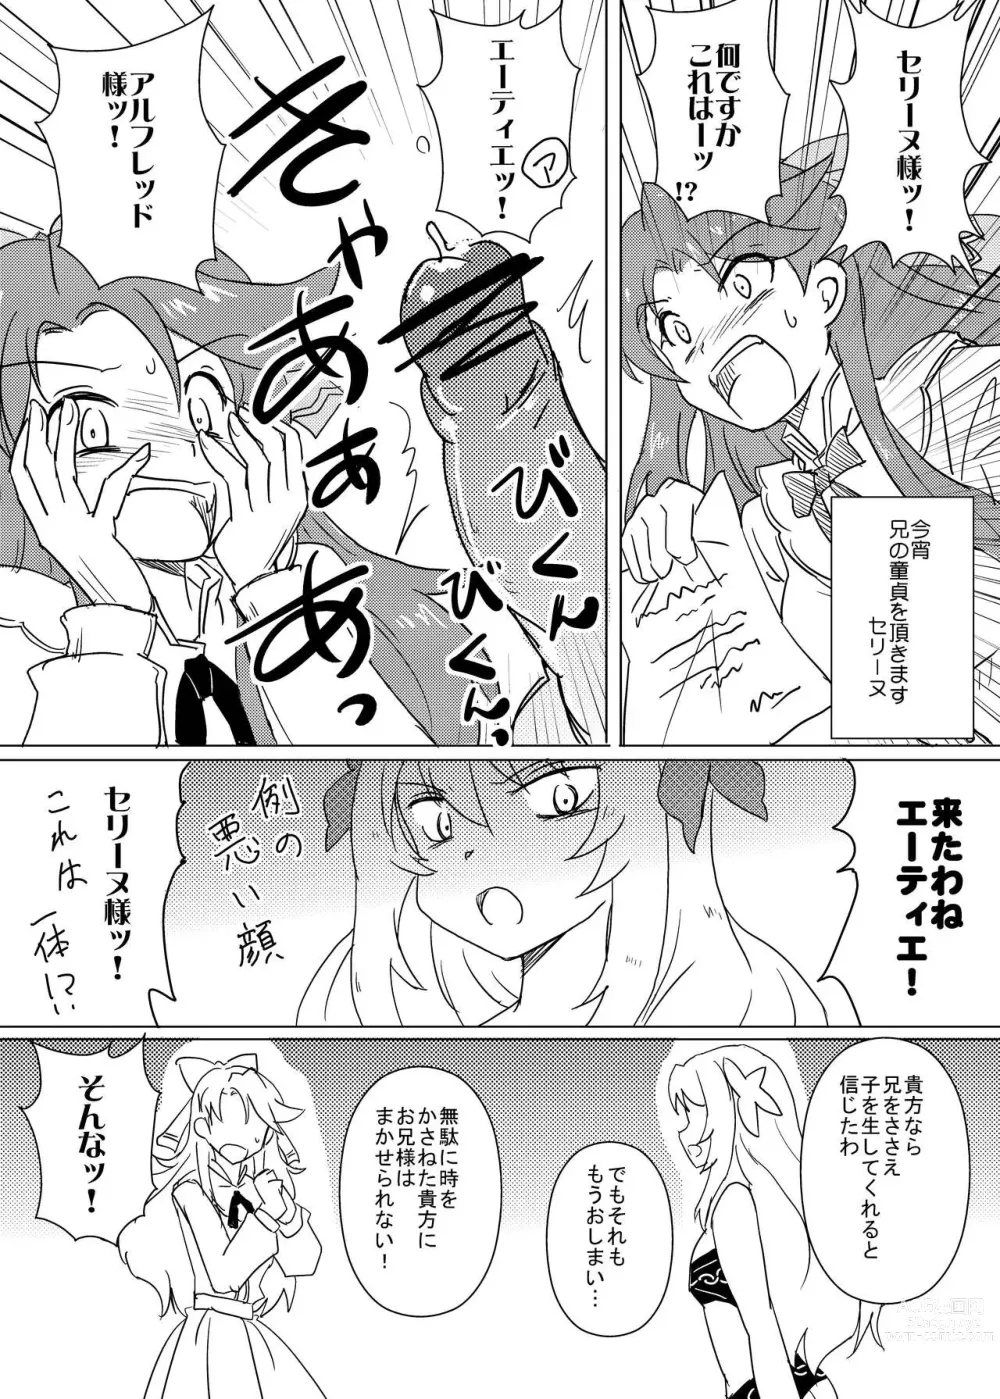 Page 7 of doujinshi Philene no Mirai